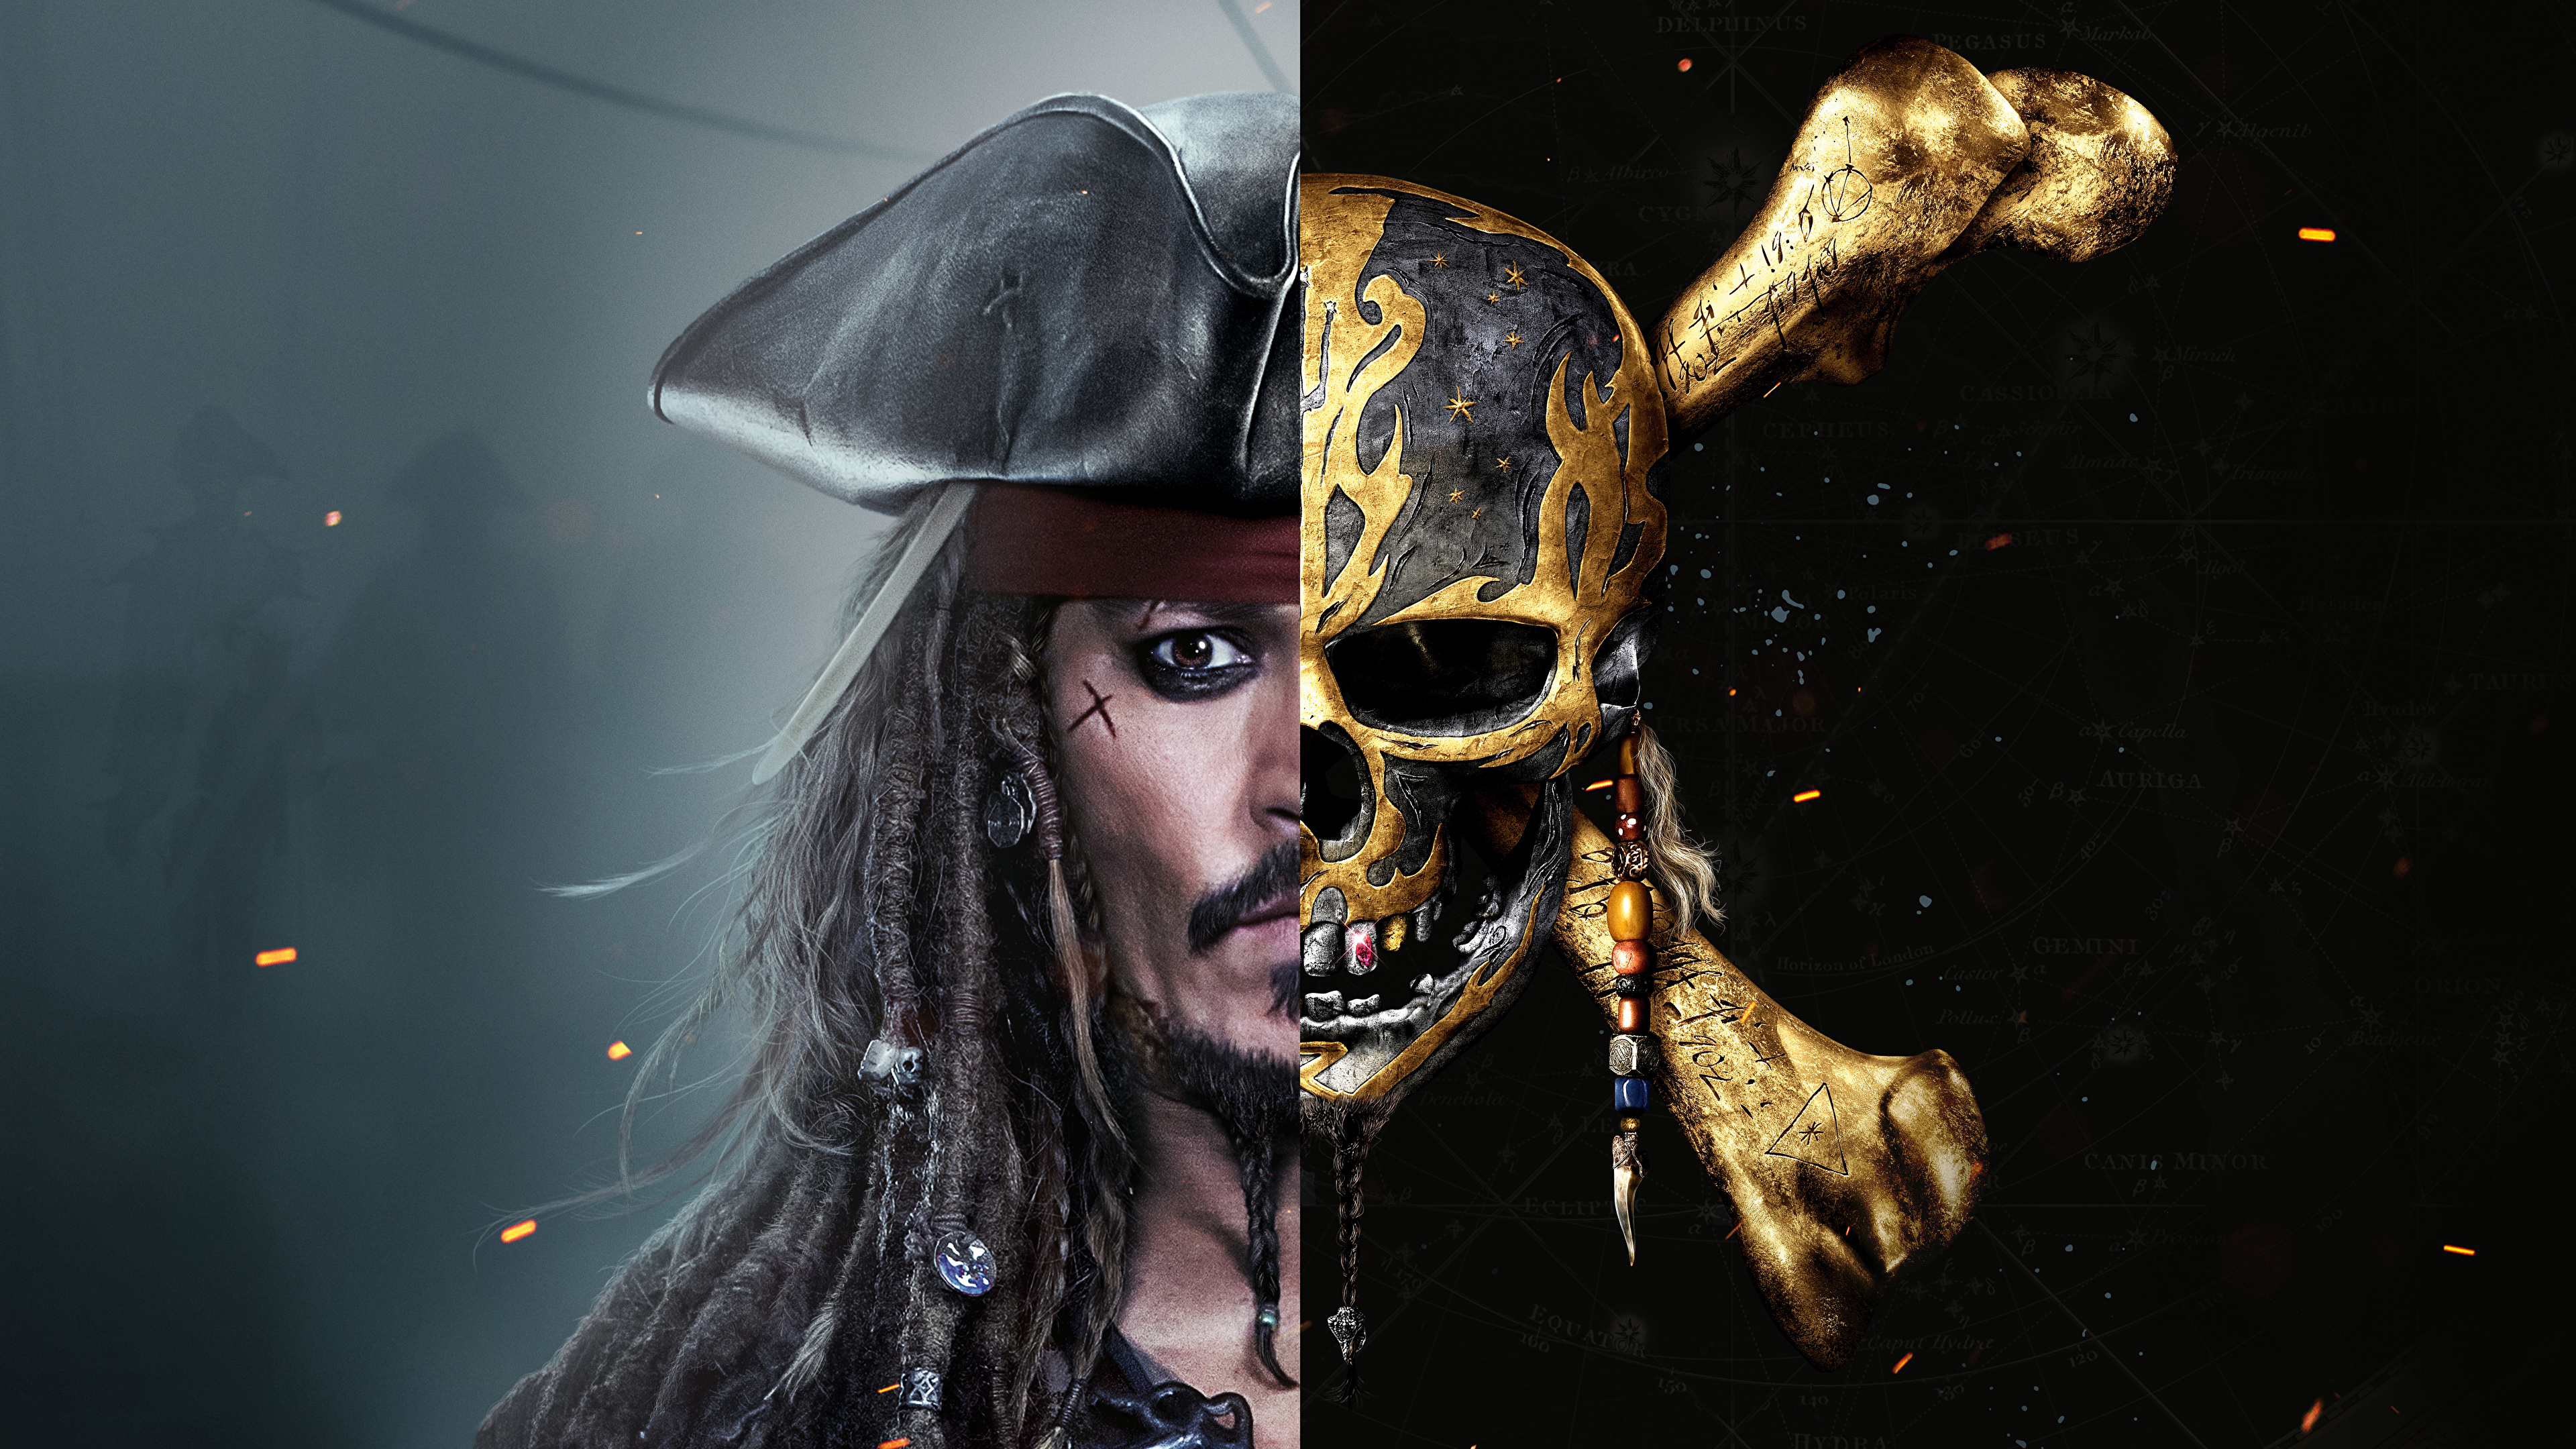 壁紙 3840x2160 パイレーツ オブ カリビアン 最後の海賊 ジョニー デップ 頭蓋骨 映画 有名人 ダウンロード 写真